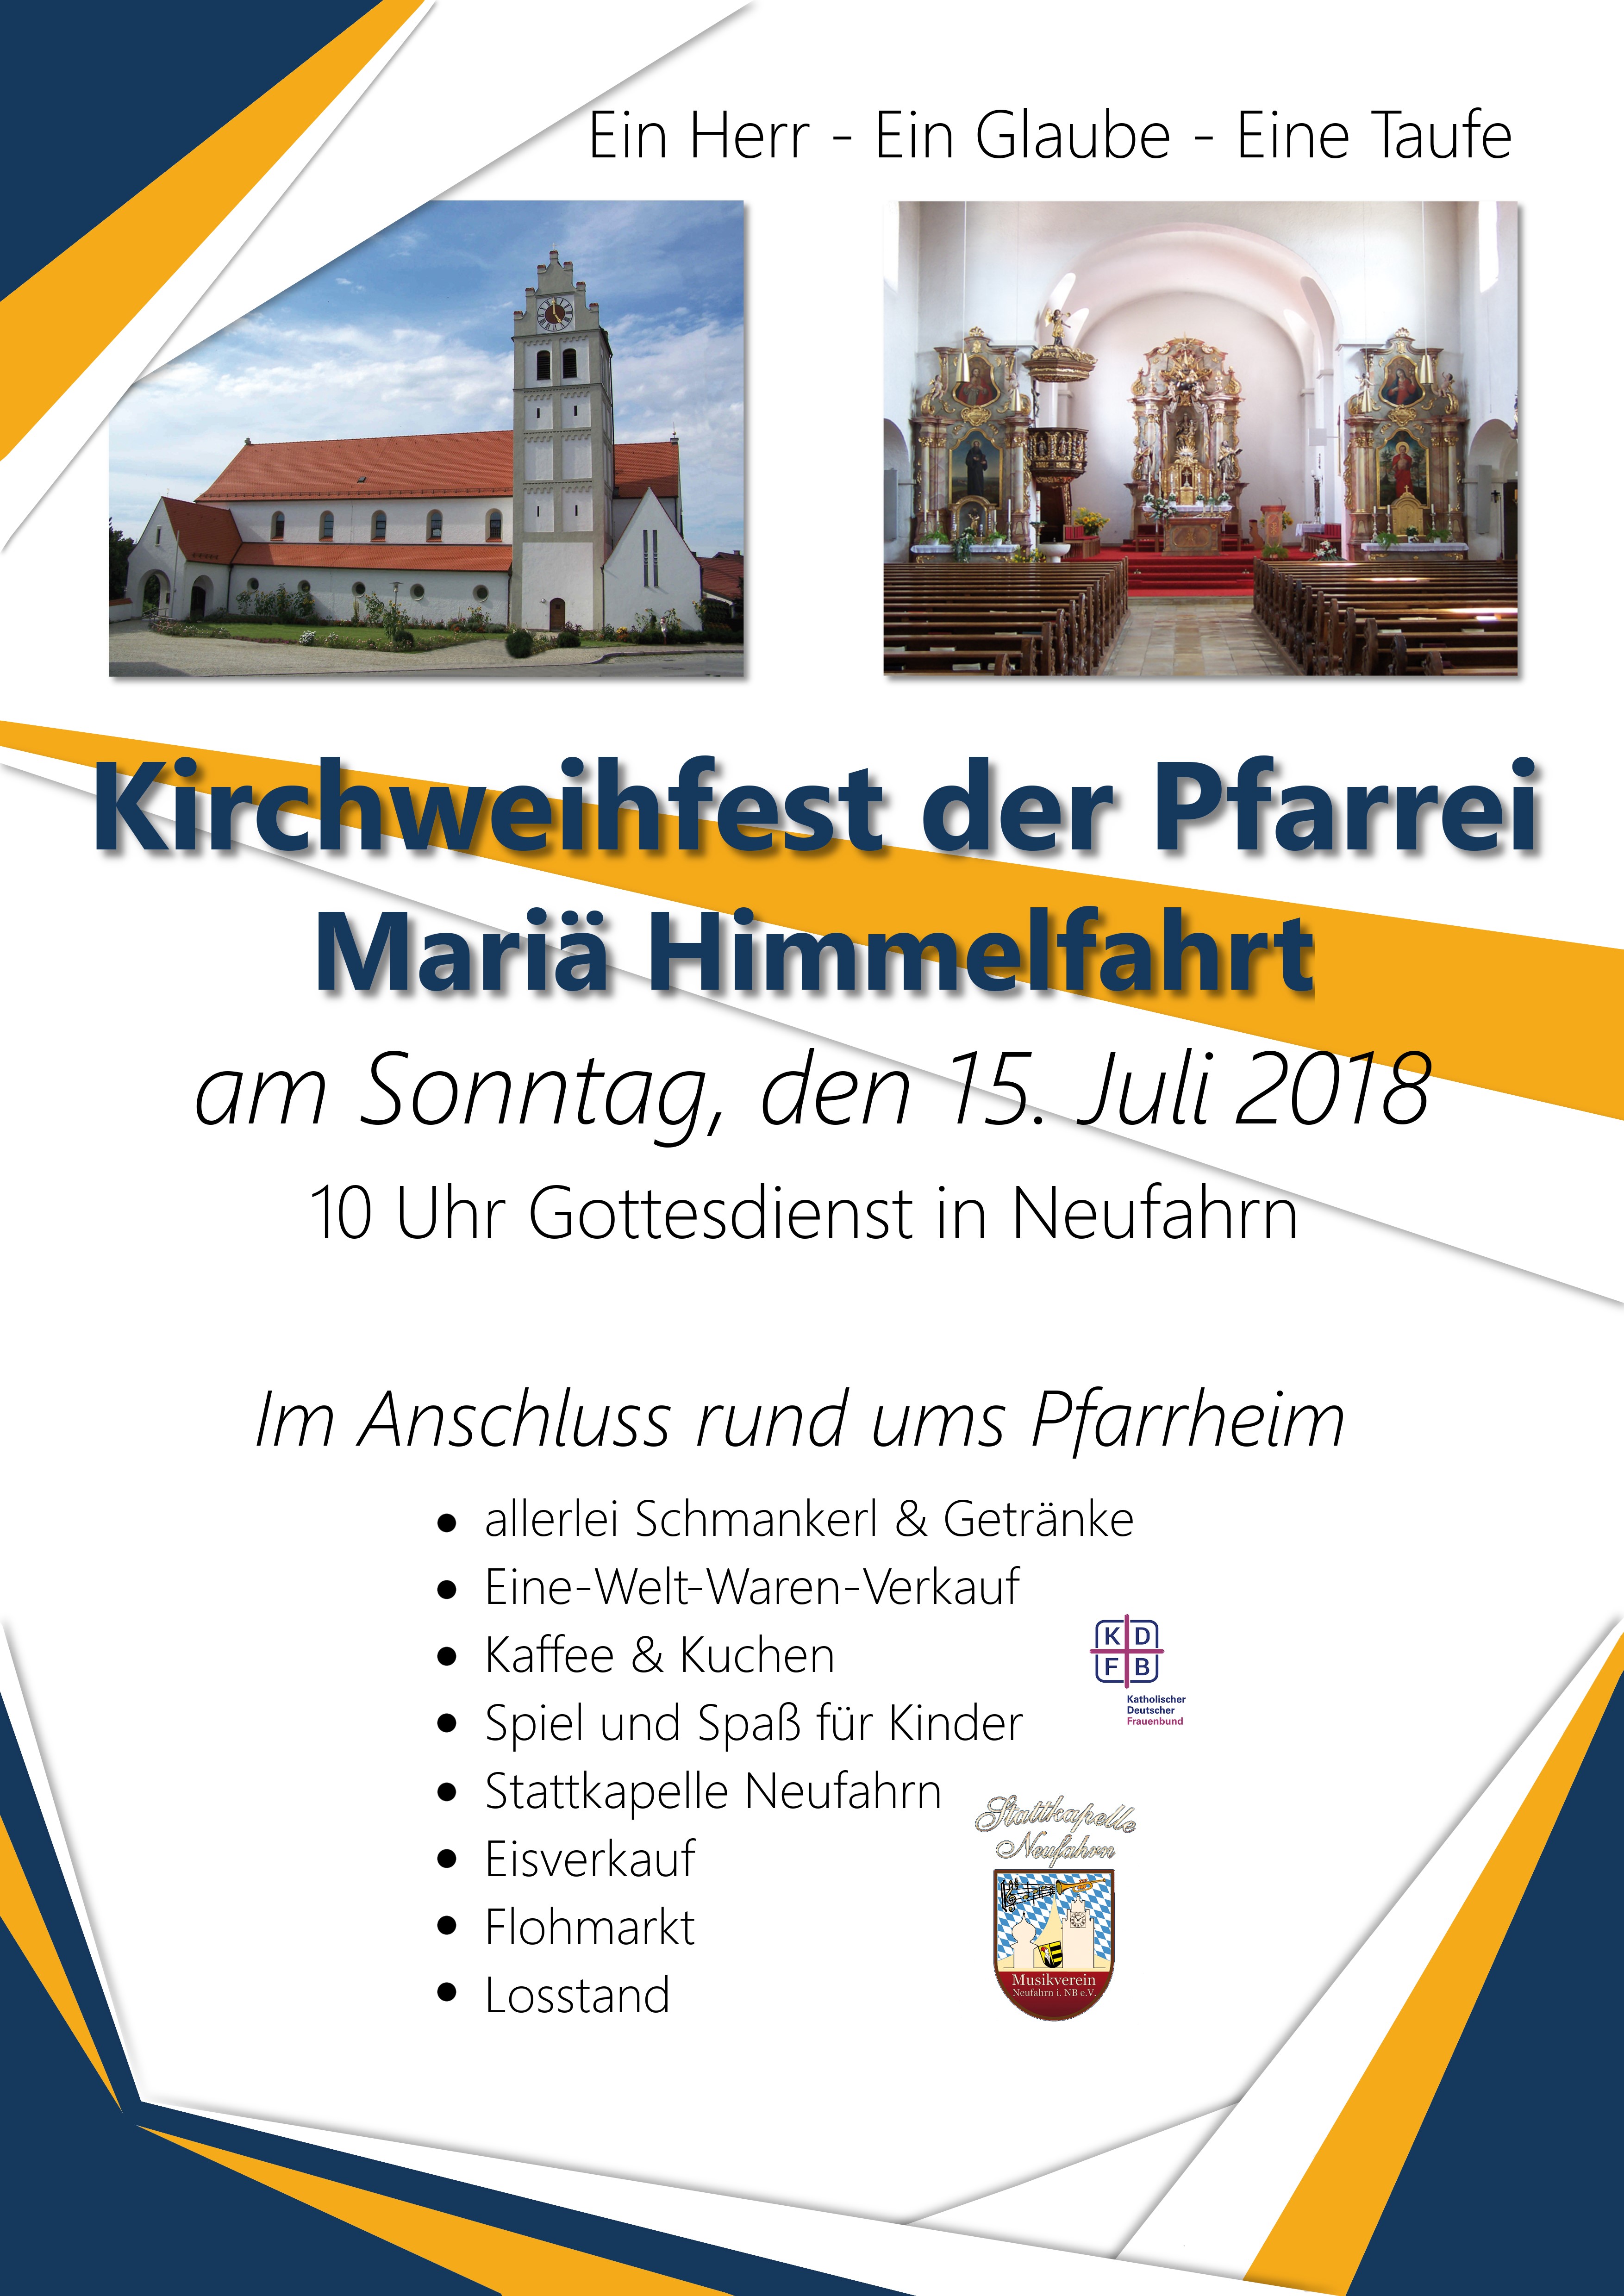 Herzliche Einladung zum Kirchweihfest am 15.7.2018